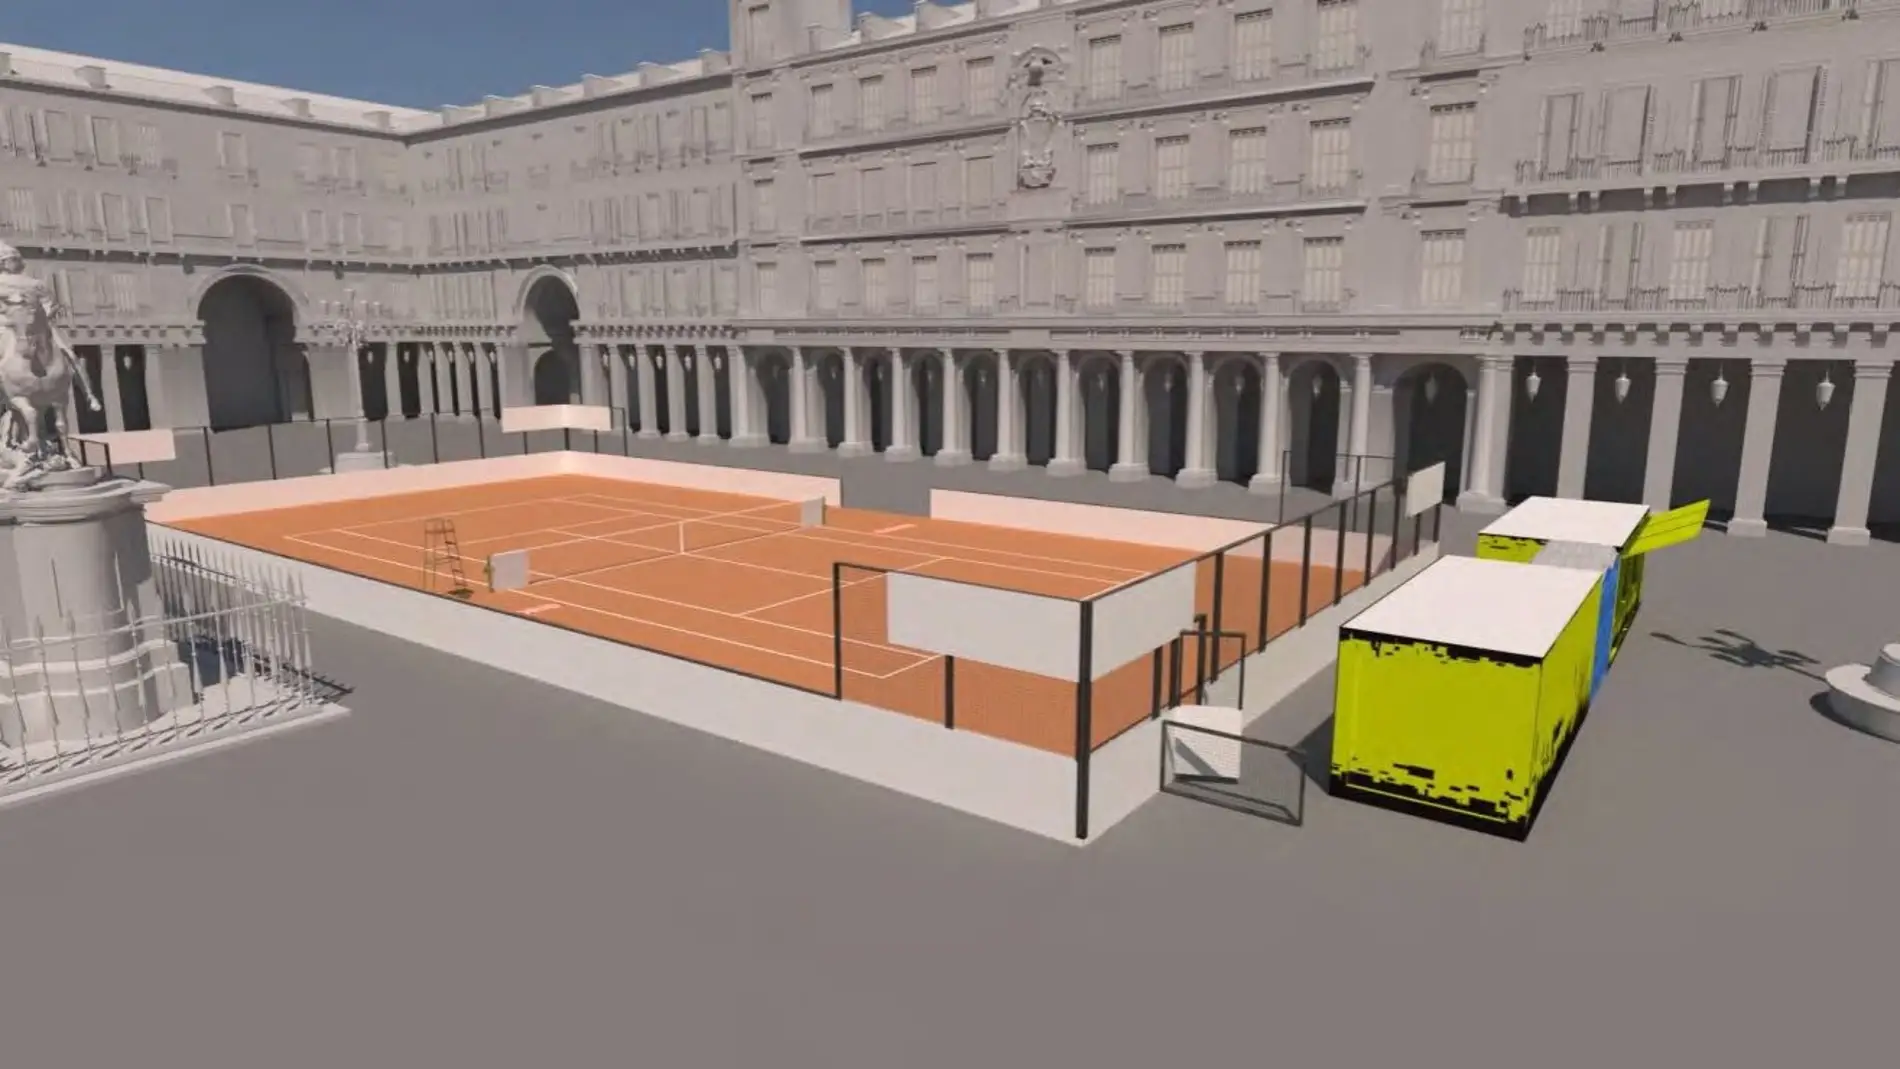 La Plaza Mayor de Madrid tendrá una pista de tenis: cómo reservar para jugar